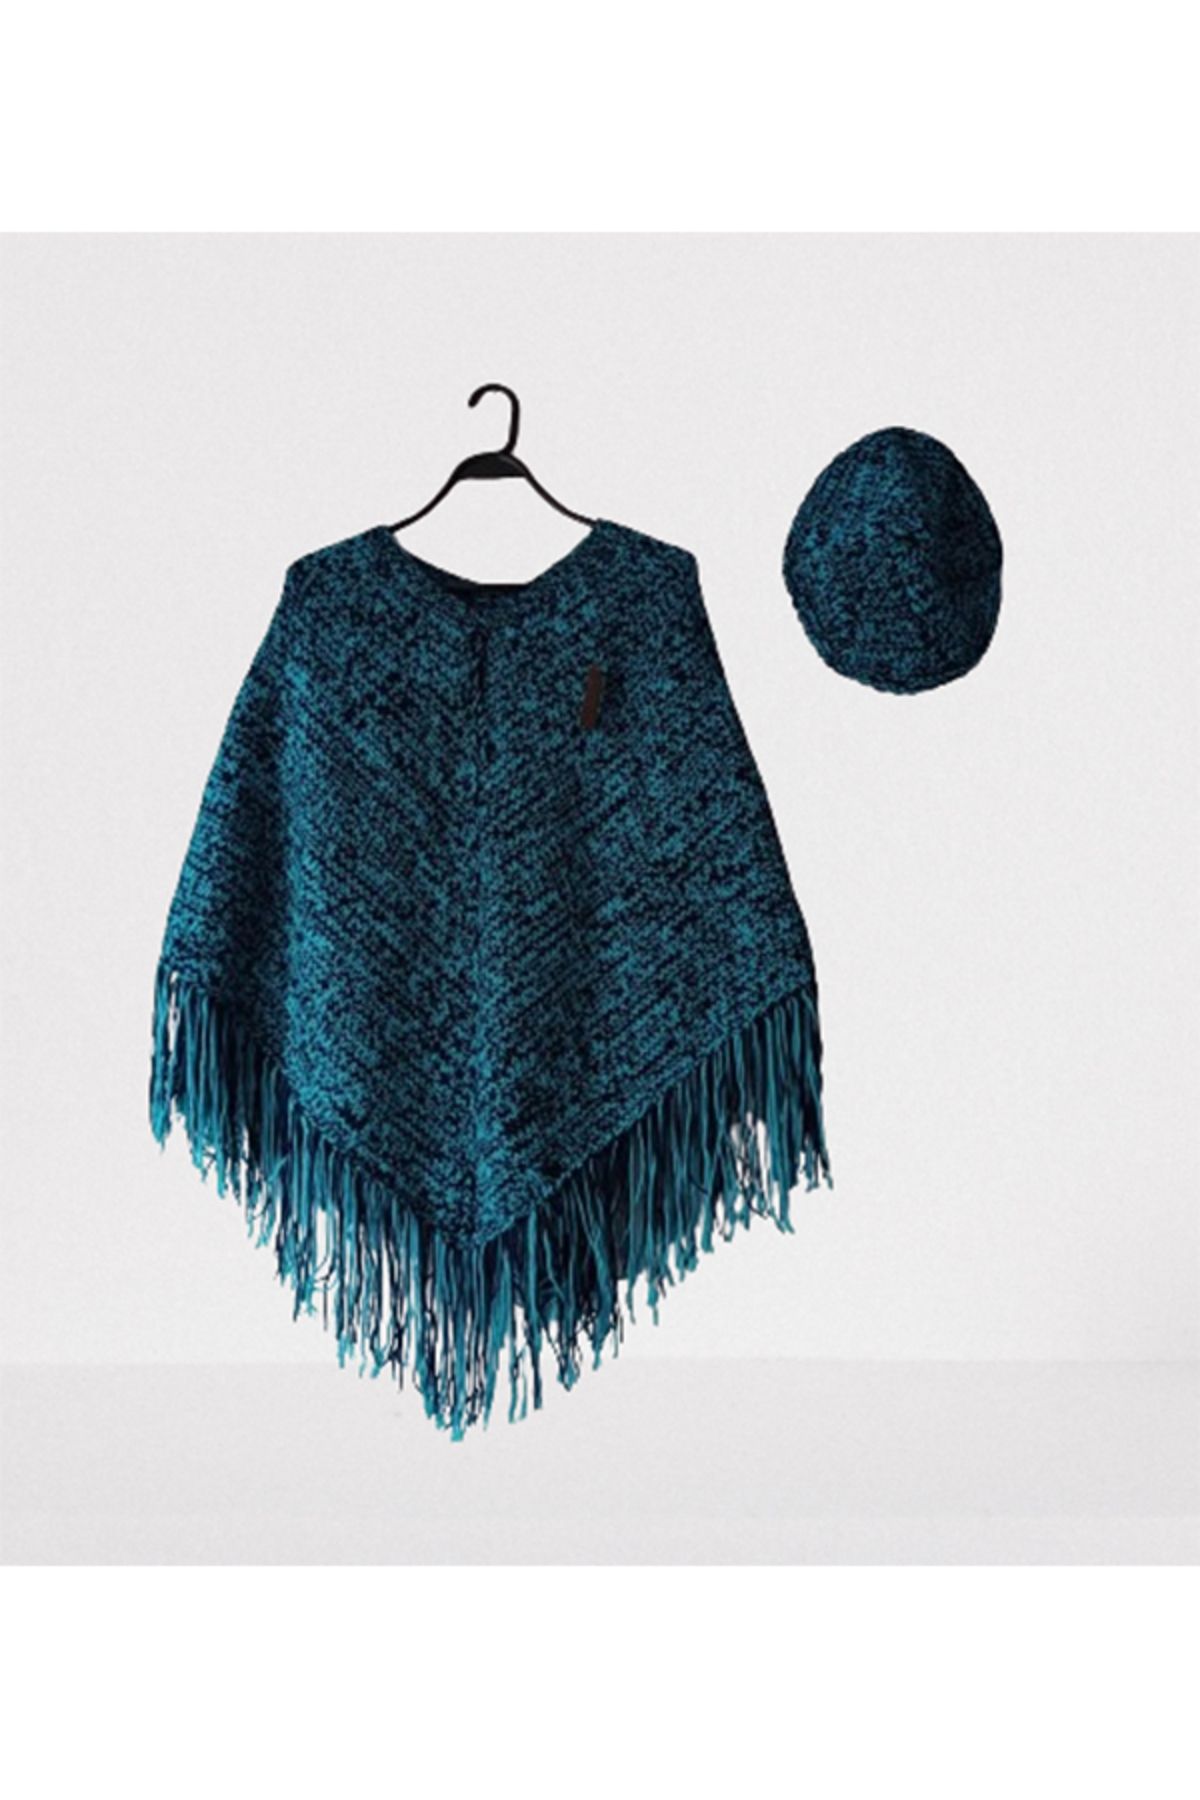 Namaste Vintage Mavi renk el örgüsü püsküllü panço ve şapka takım